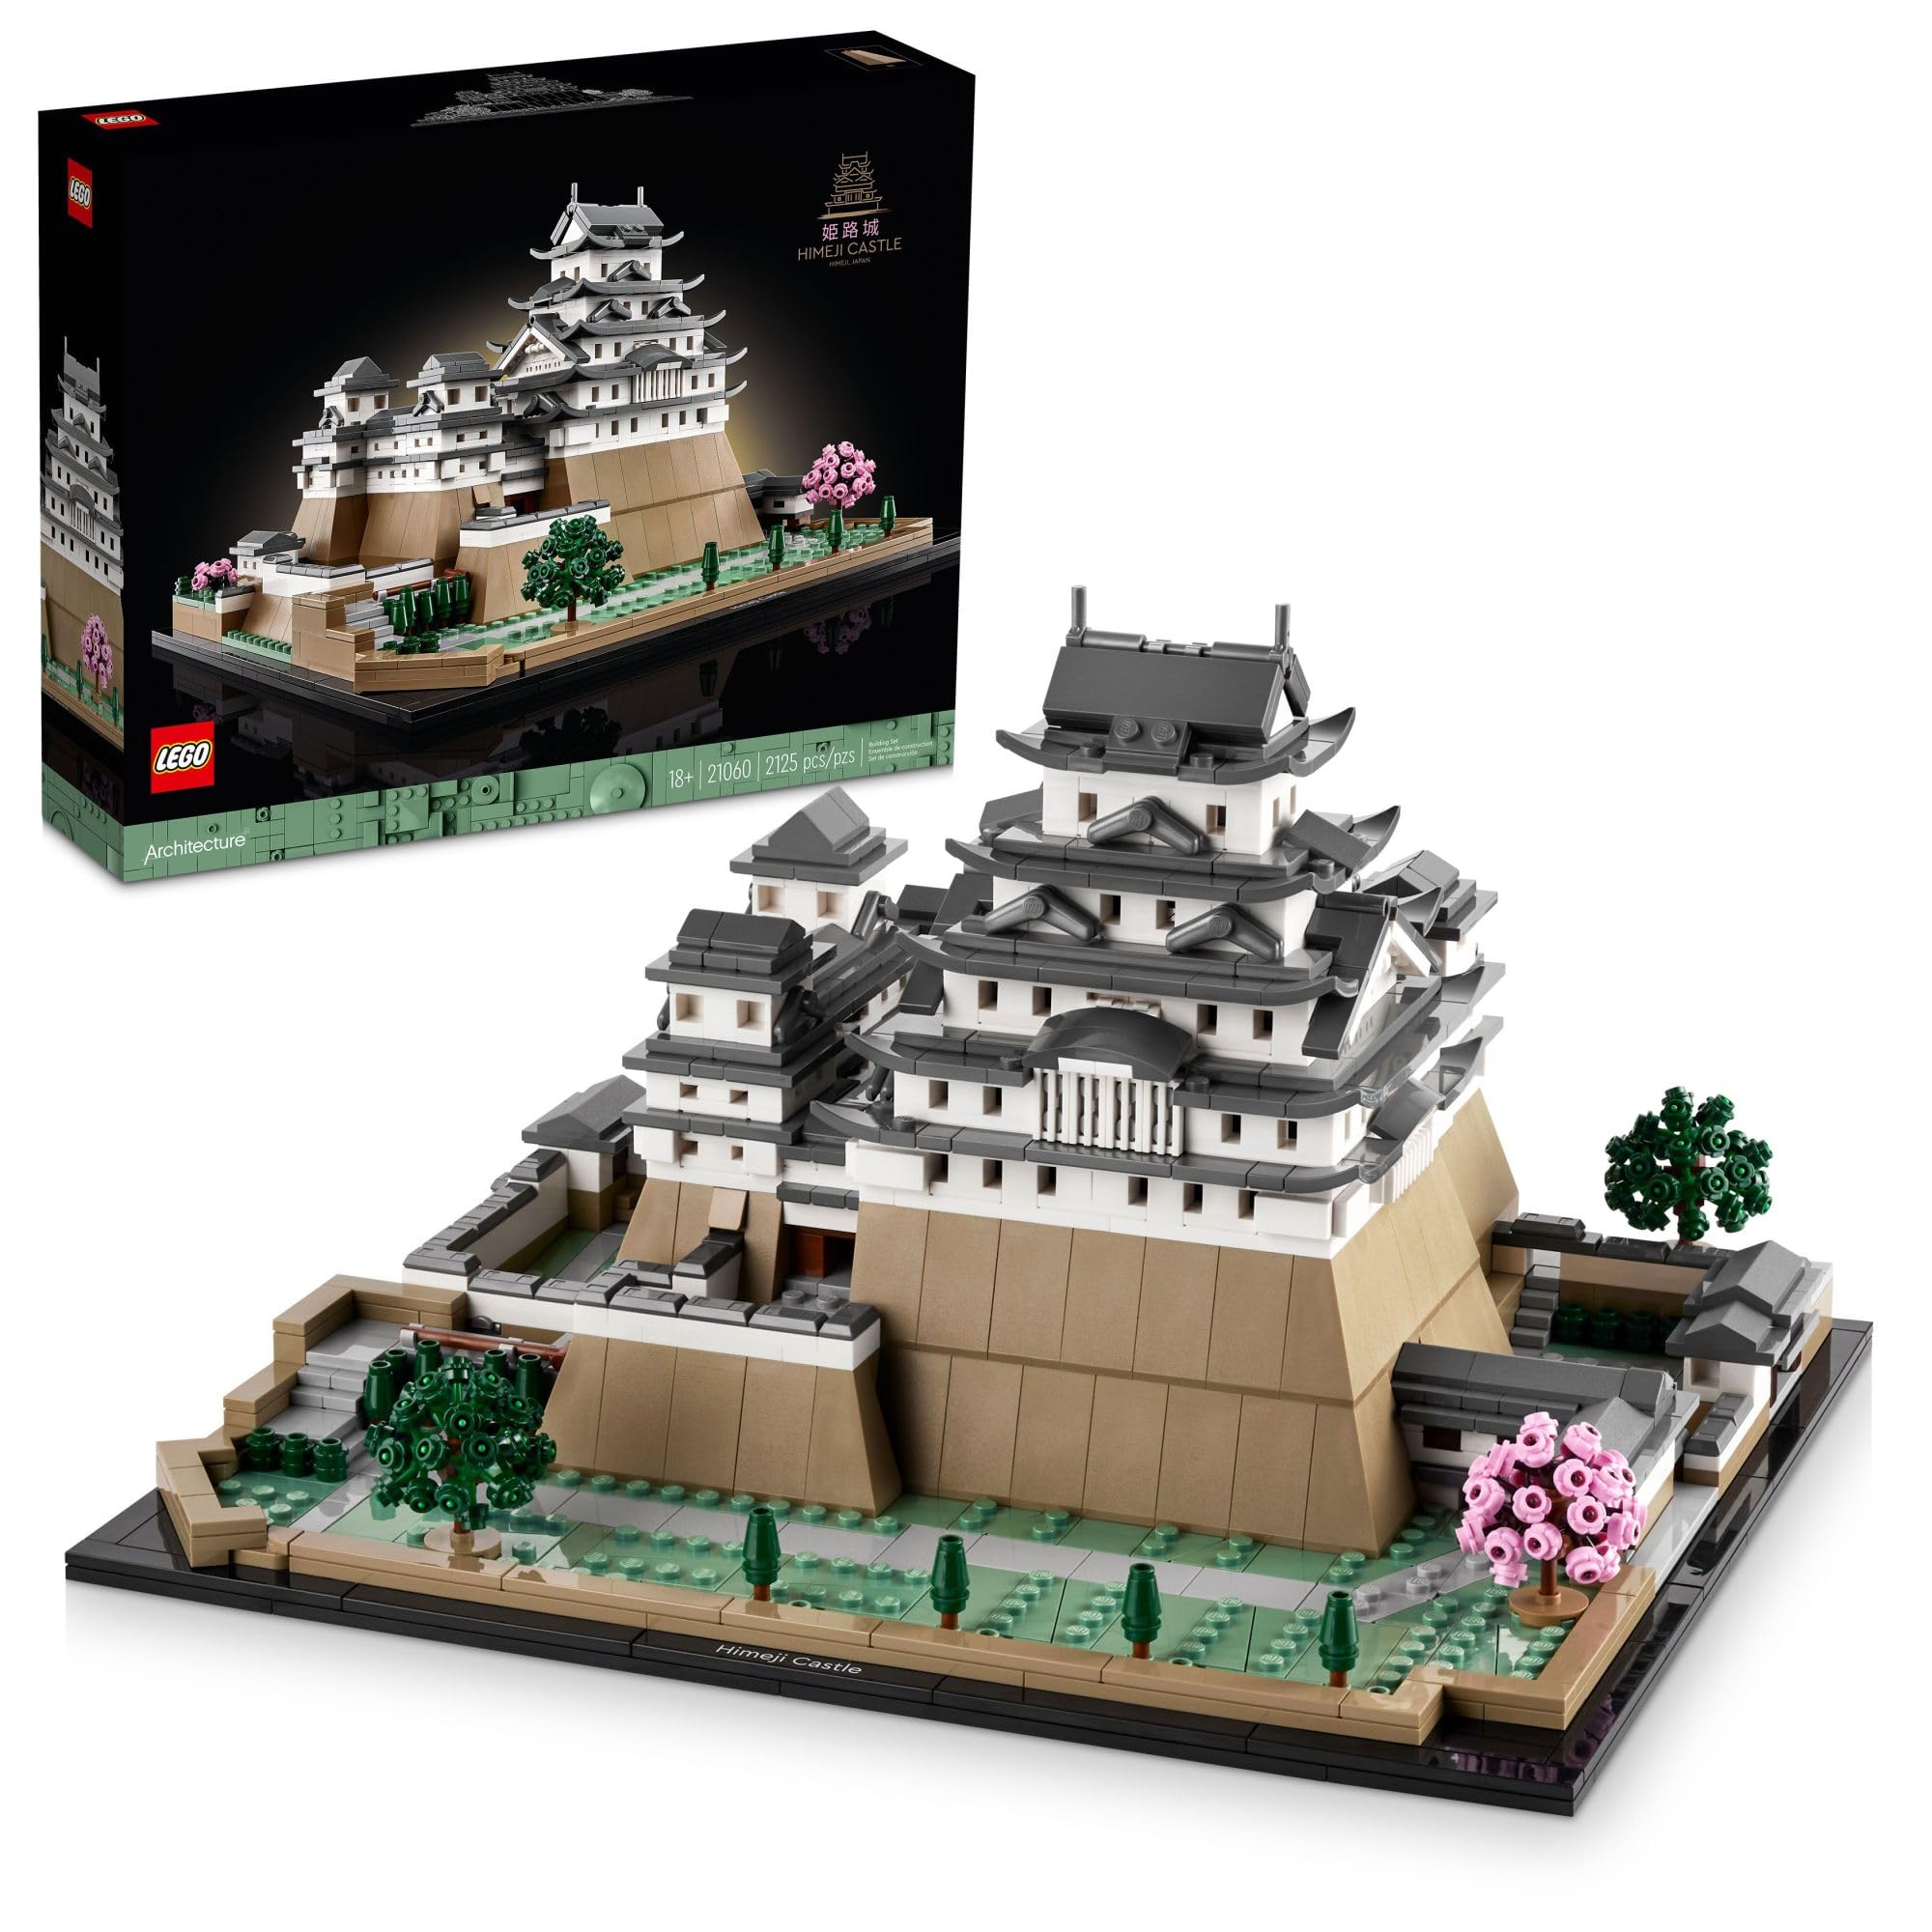 LEGO 建筑地标系列：姬路城 21060 建筑套装，搭建并展示这款成人收藏模型，送给日本爱好者的有趣礼物，日...